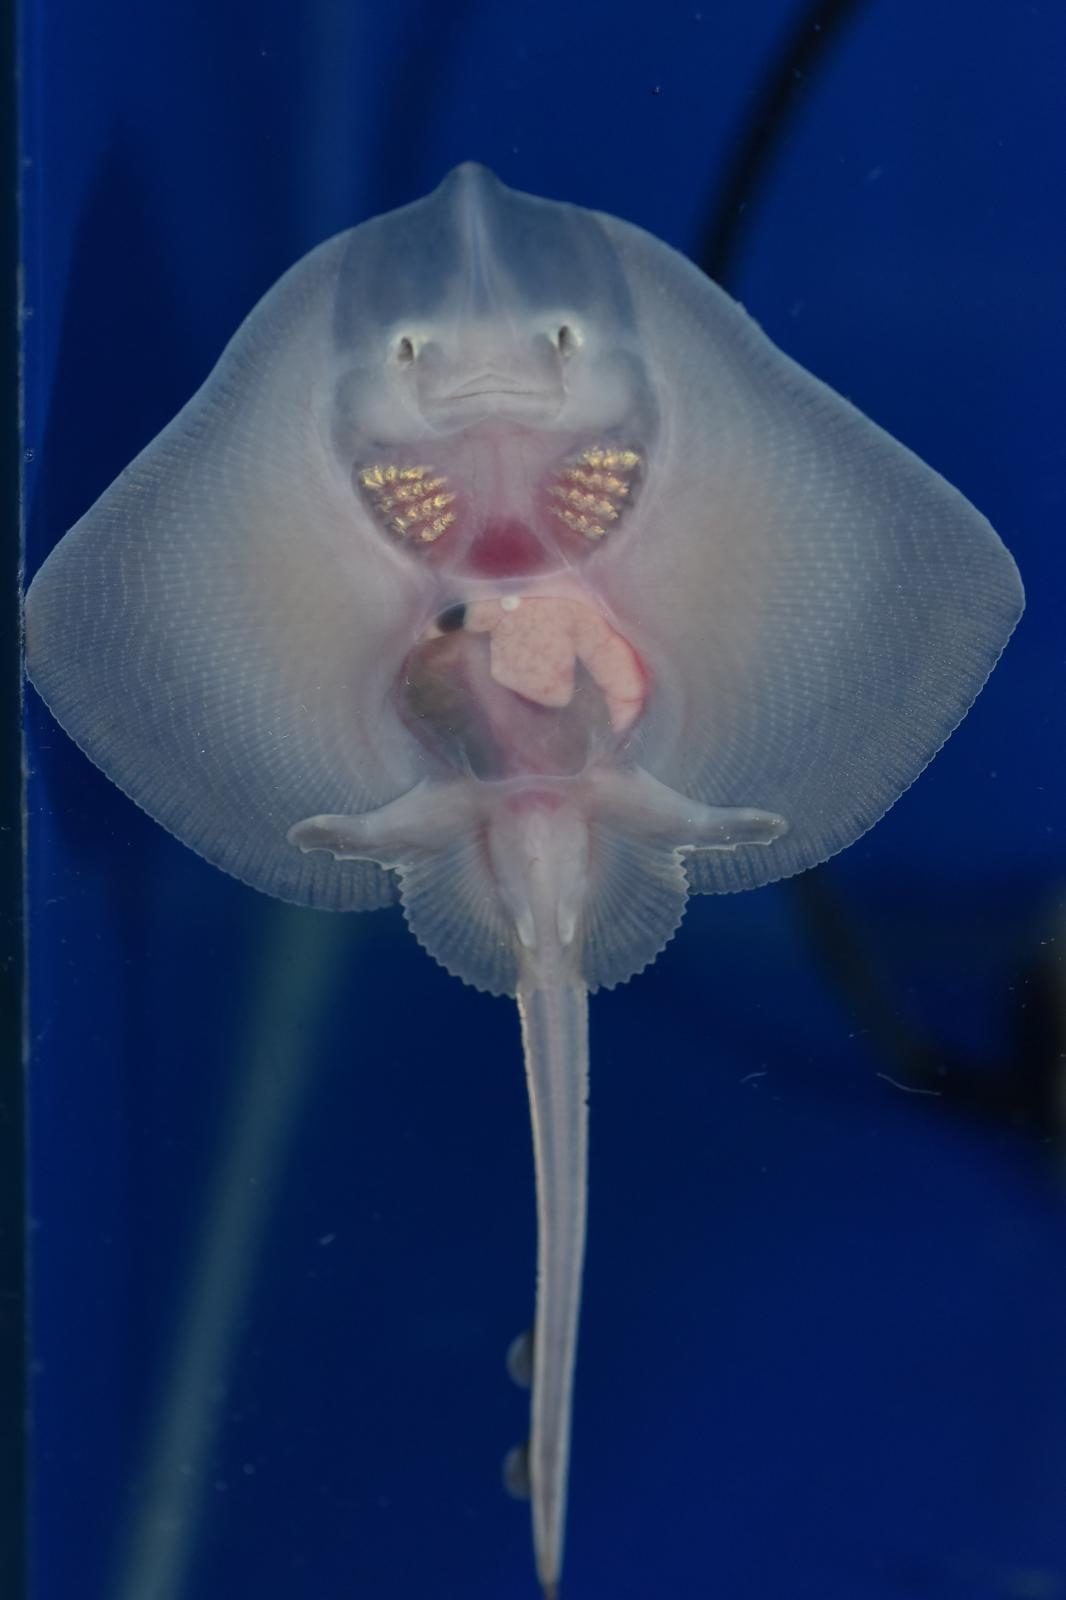 Aquarium Pula odnedavno ima novu atrakciju, bebe raže.